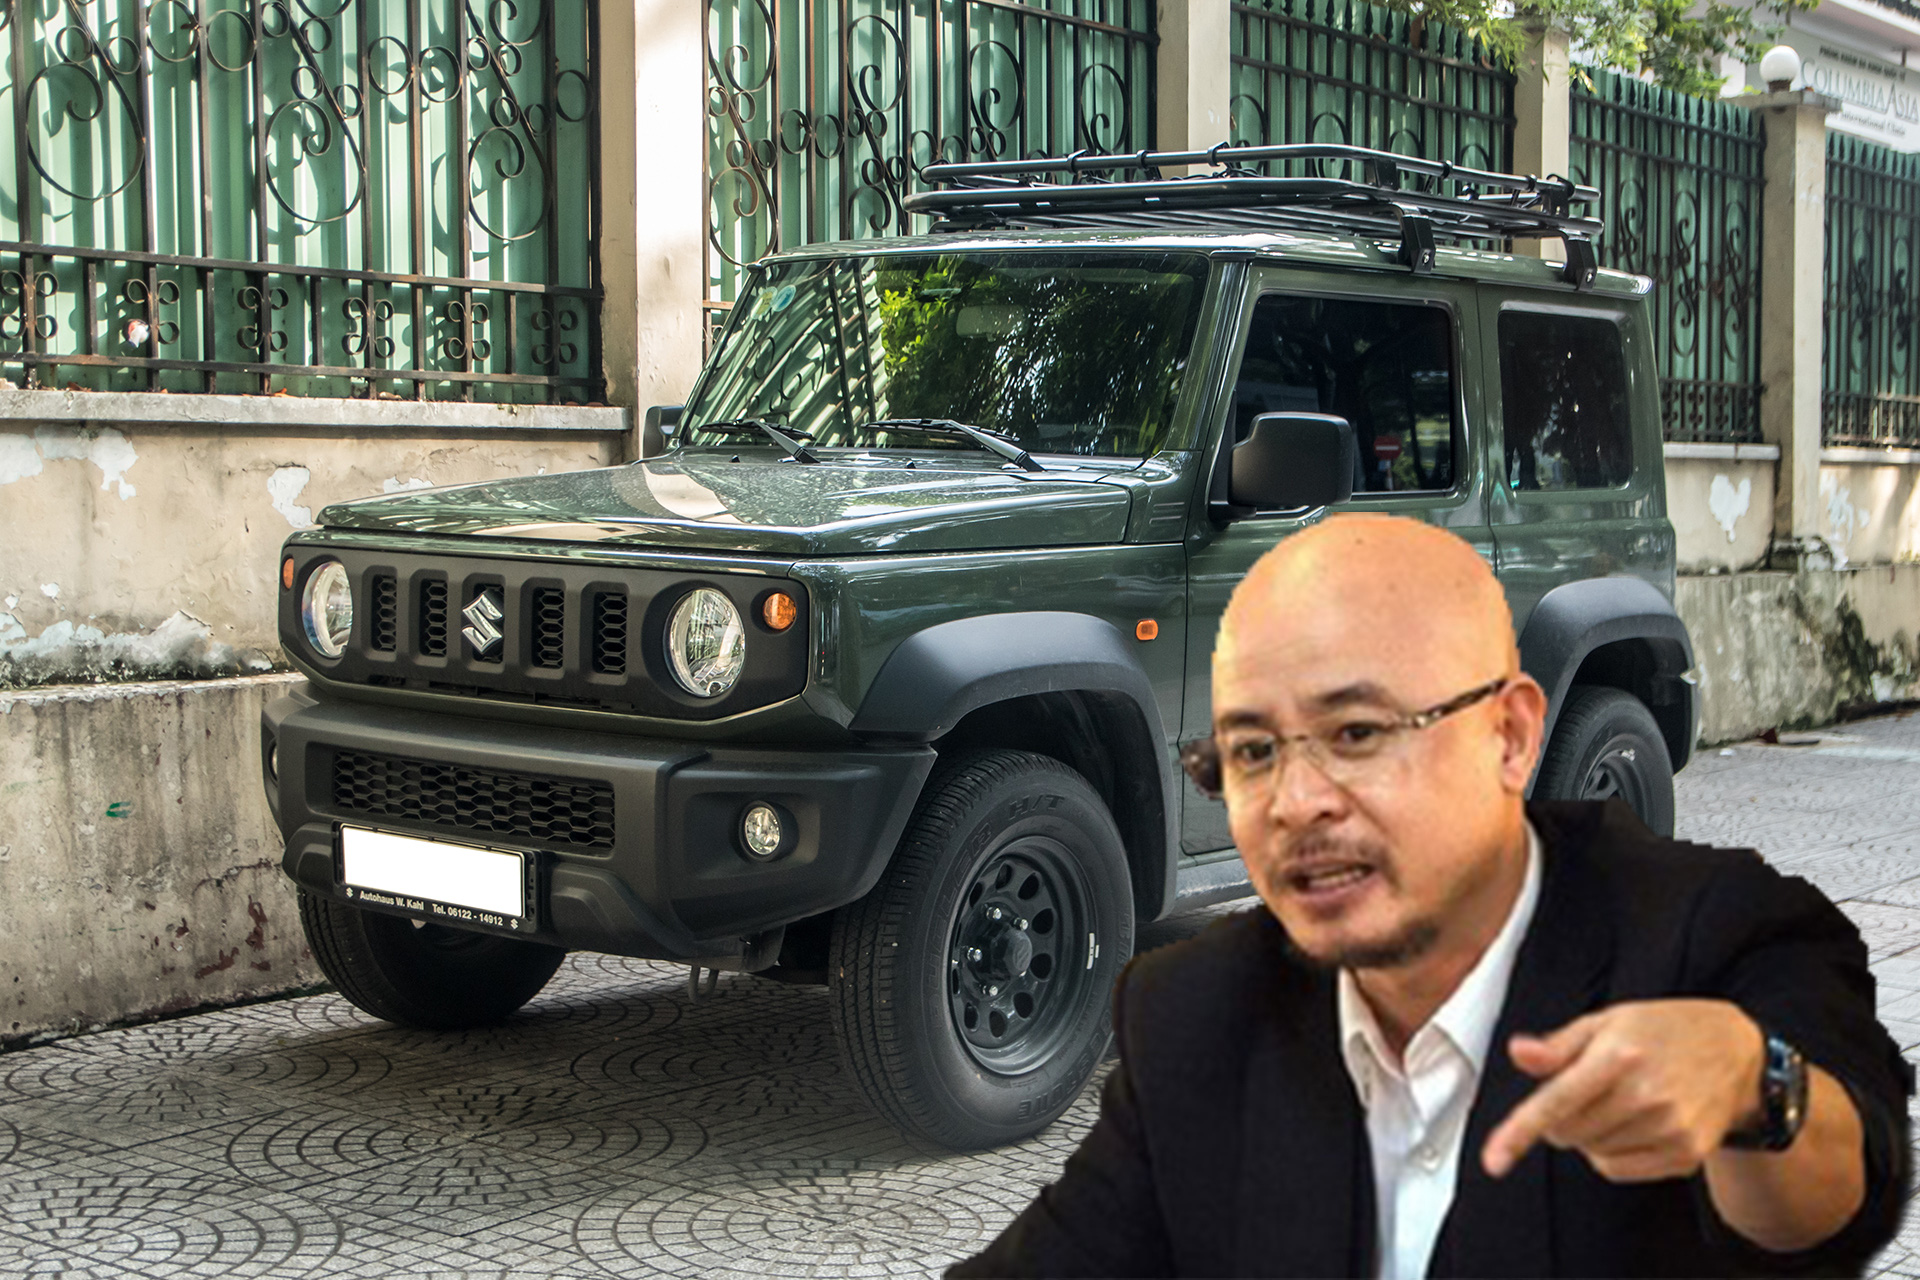 Ông Đặng Lê Nguyên Vũ bất ngờ tậu Suzuki Jimny giá 1,4 tỷ đồng, hàng hiếm chỉ có 2 chiếc tại Việt Nam